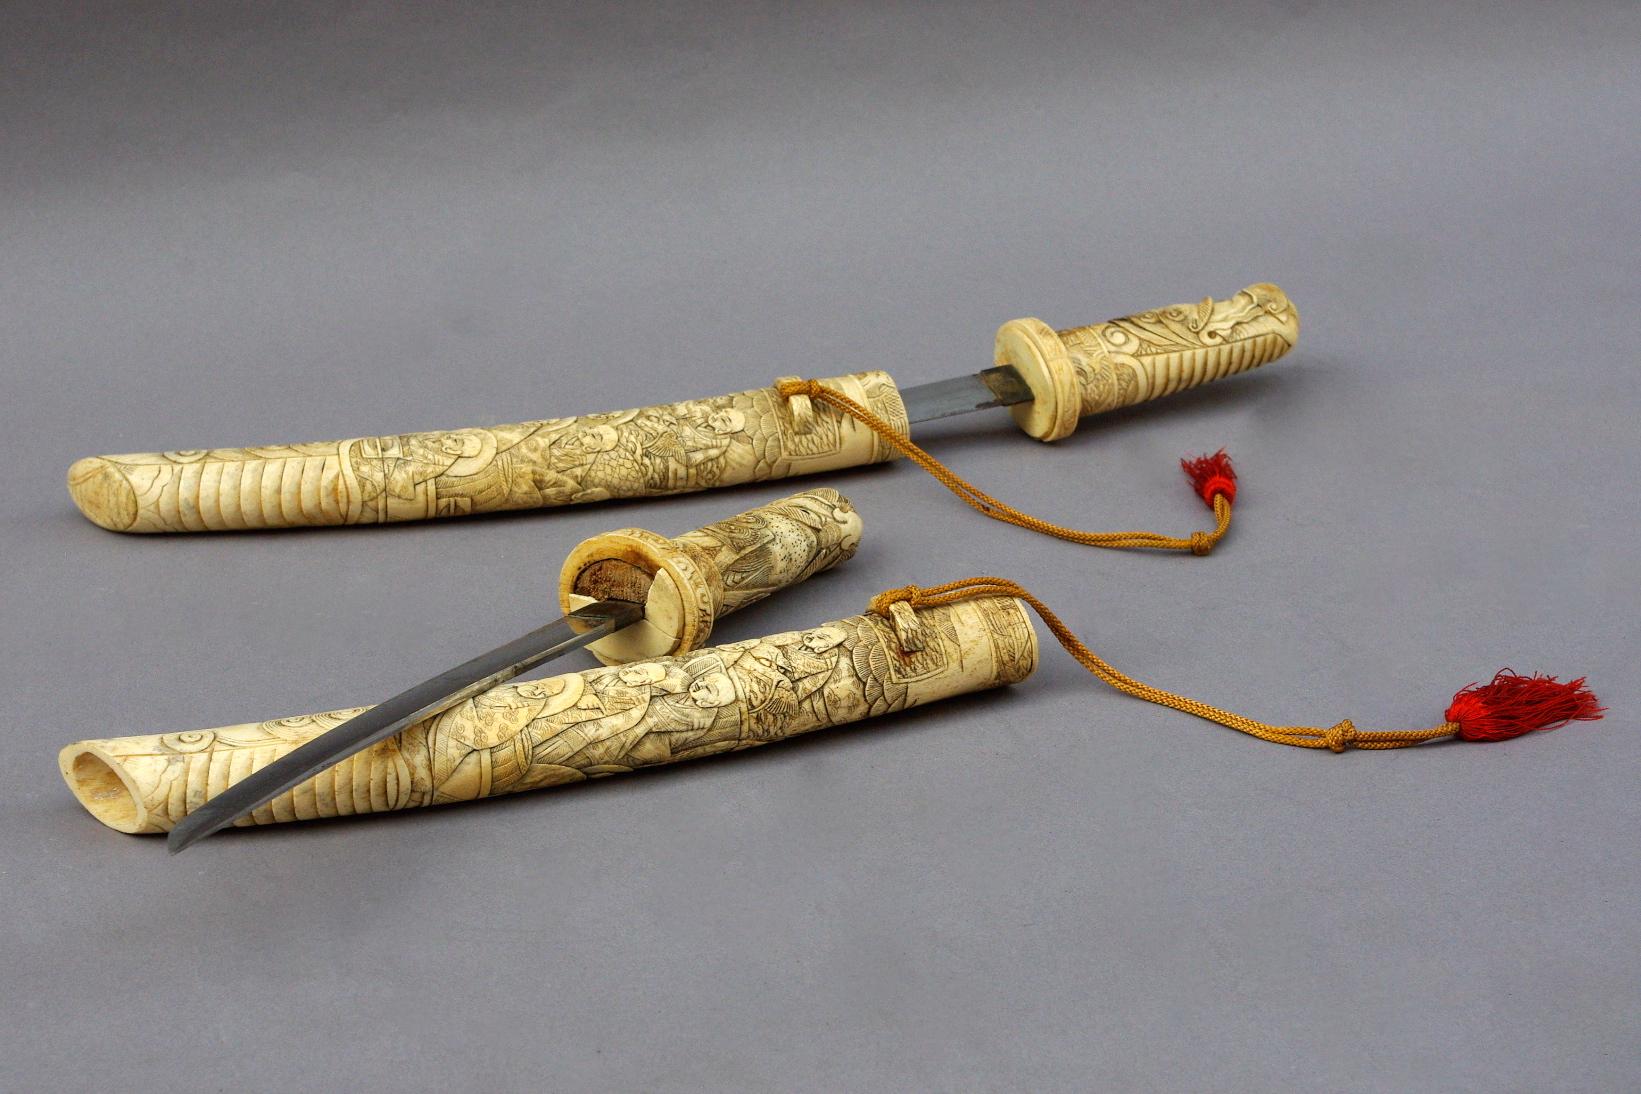 Pair of sabers in their engraved bone sheath.
Work made, circa 1900.